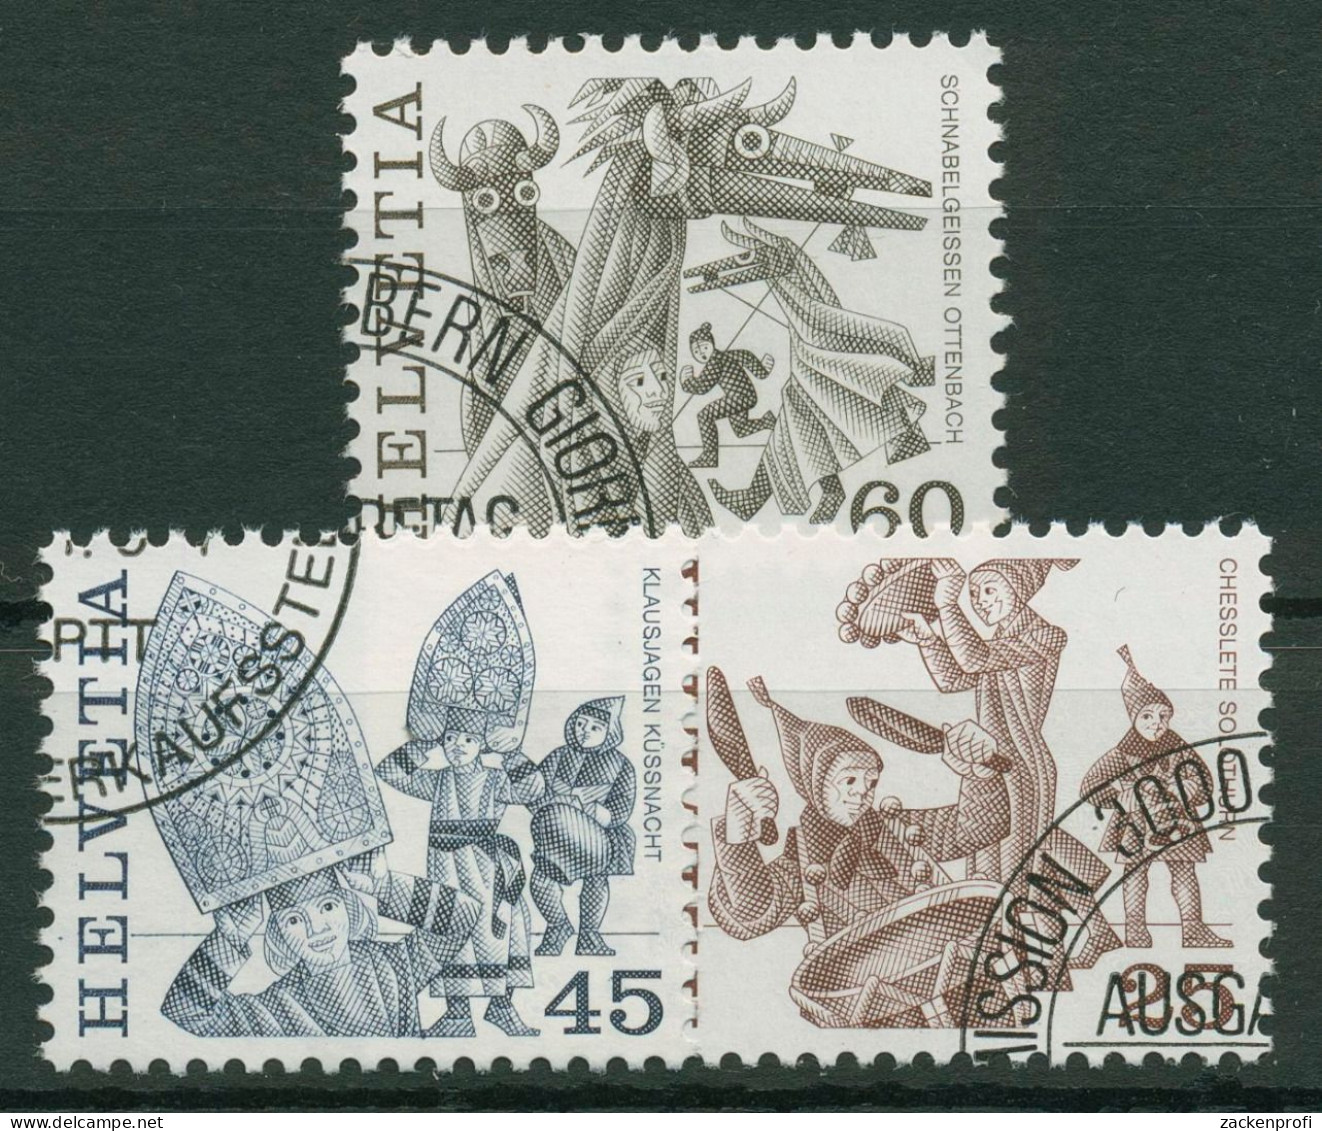 Schweiz 1984 Volksbräuche 1280/82 Gestempelt - Used Stamps